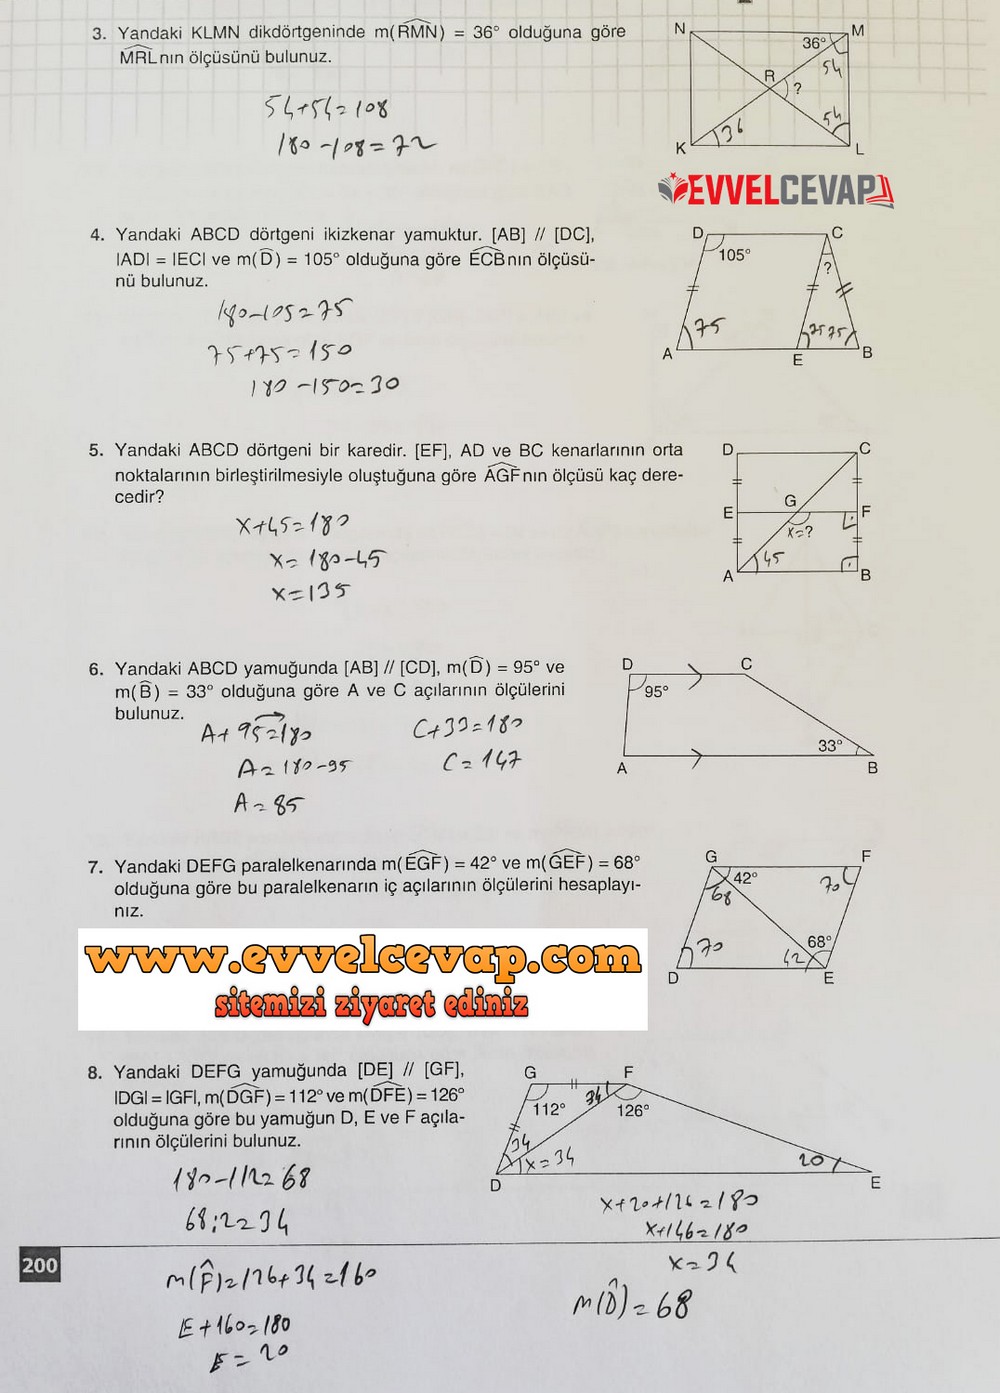 7. Sınıf Koza Yayınları Matematik Ders Kitabı Sayfa 200 Cevabı